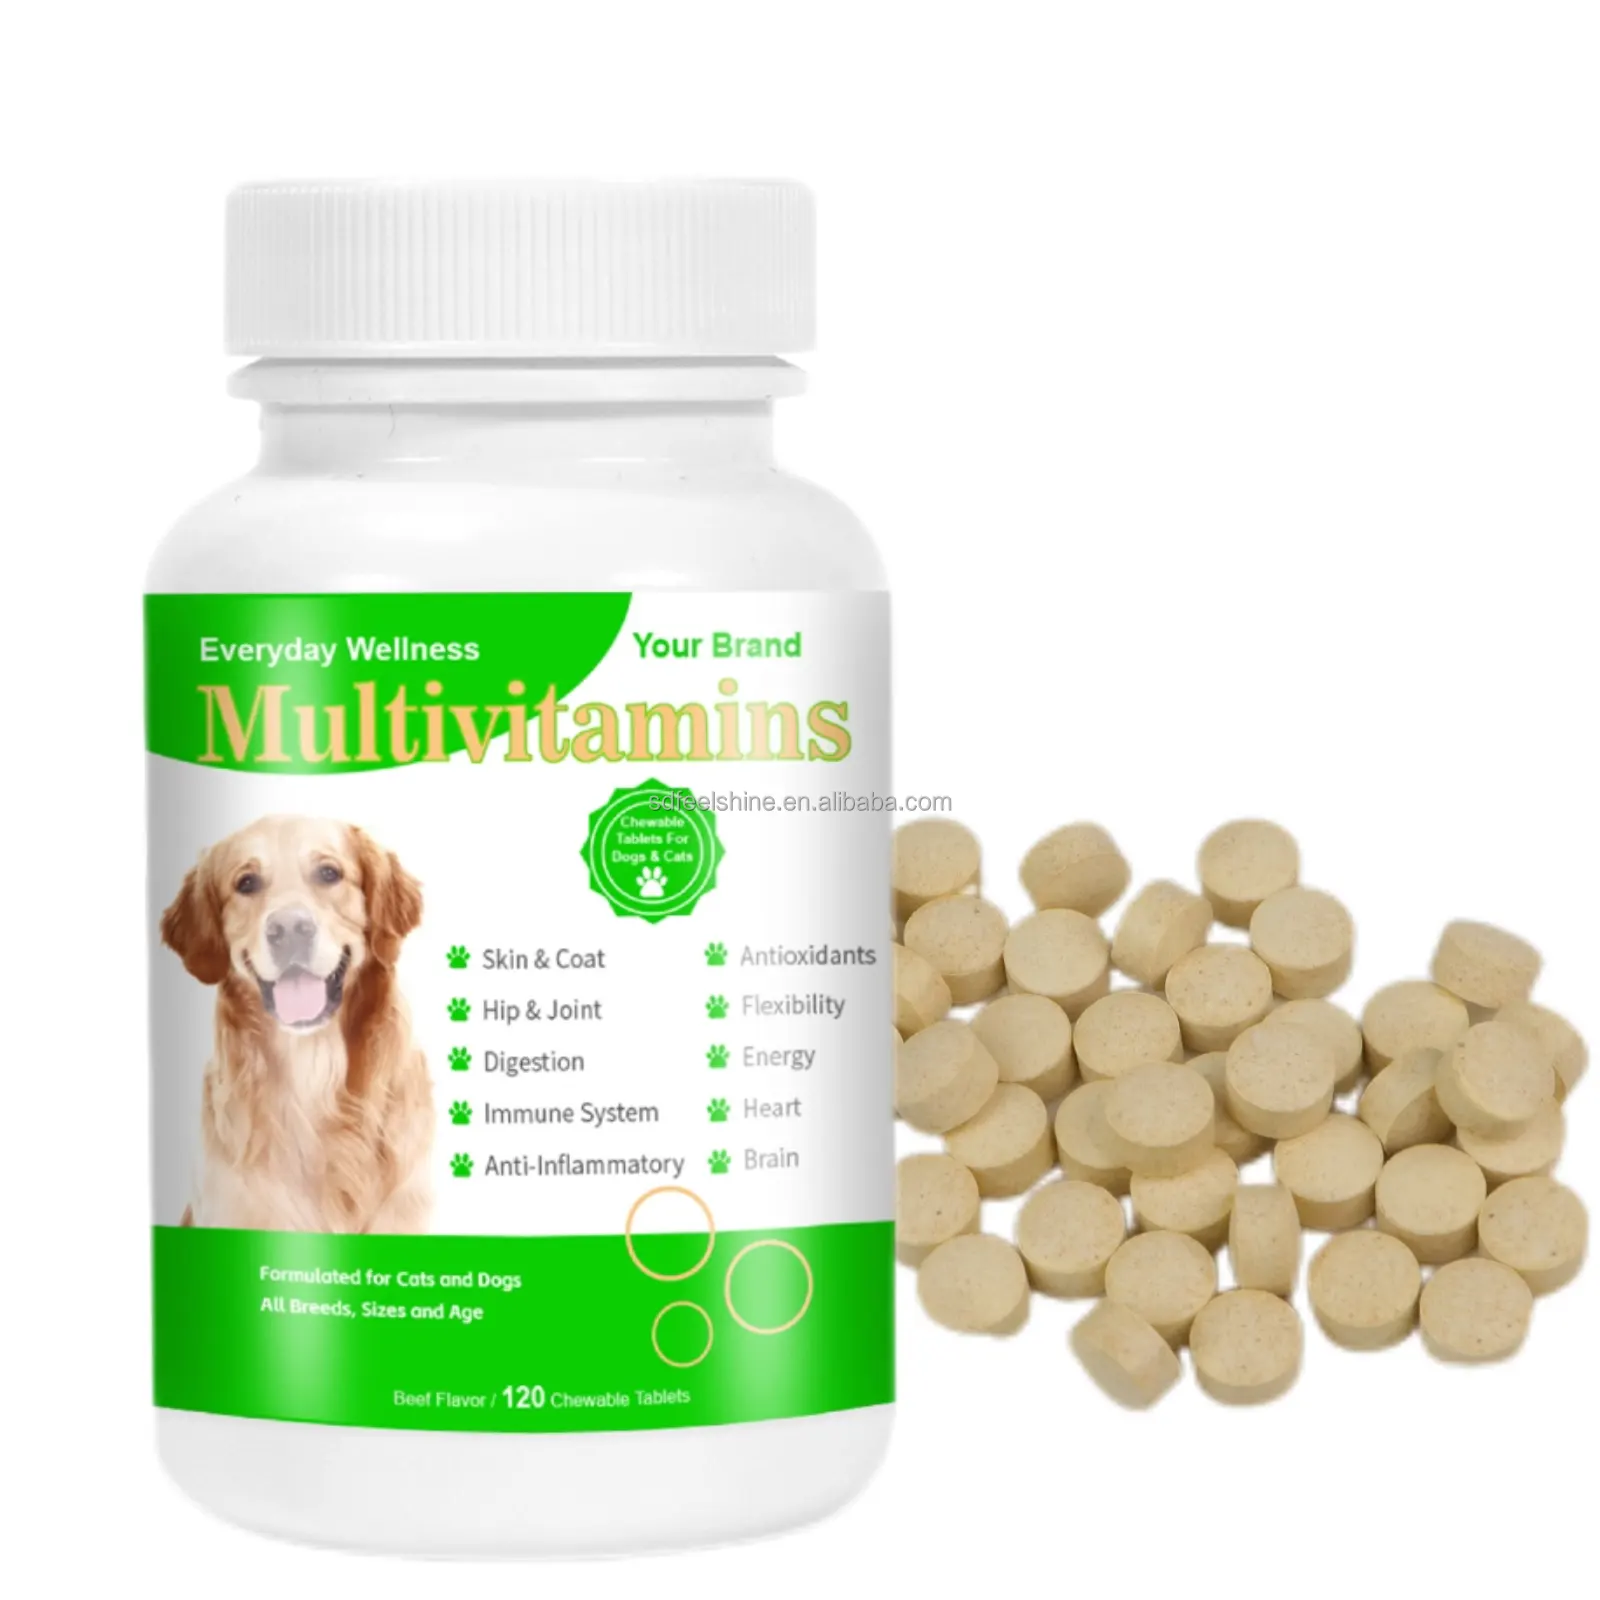 プライベートラベルドッグフード16in1マルチビタミン錠栄養マルチビタミン犬のビタミンとサプリメント